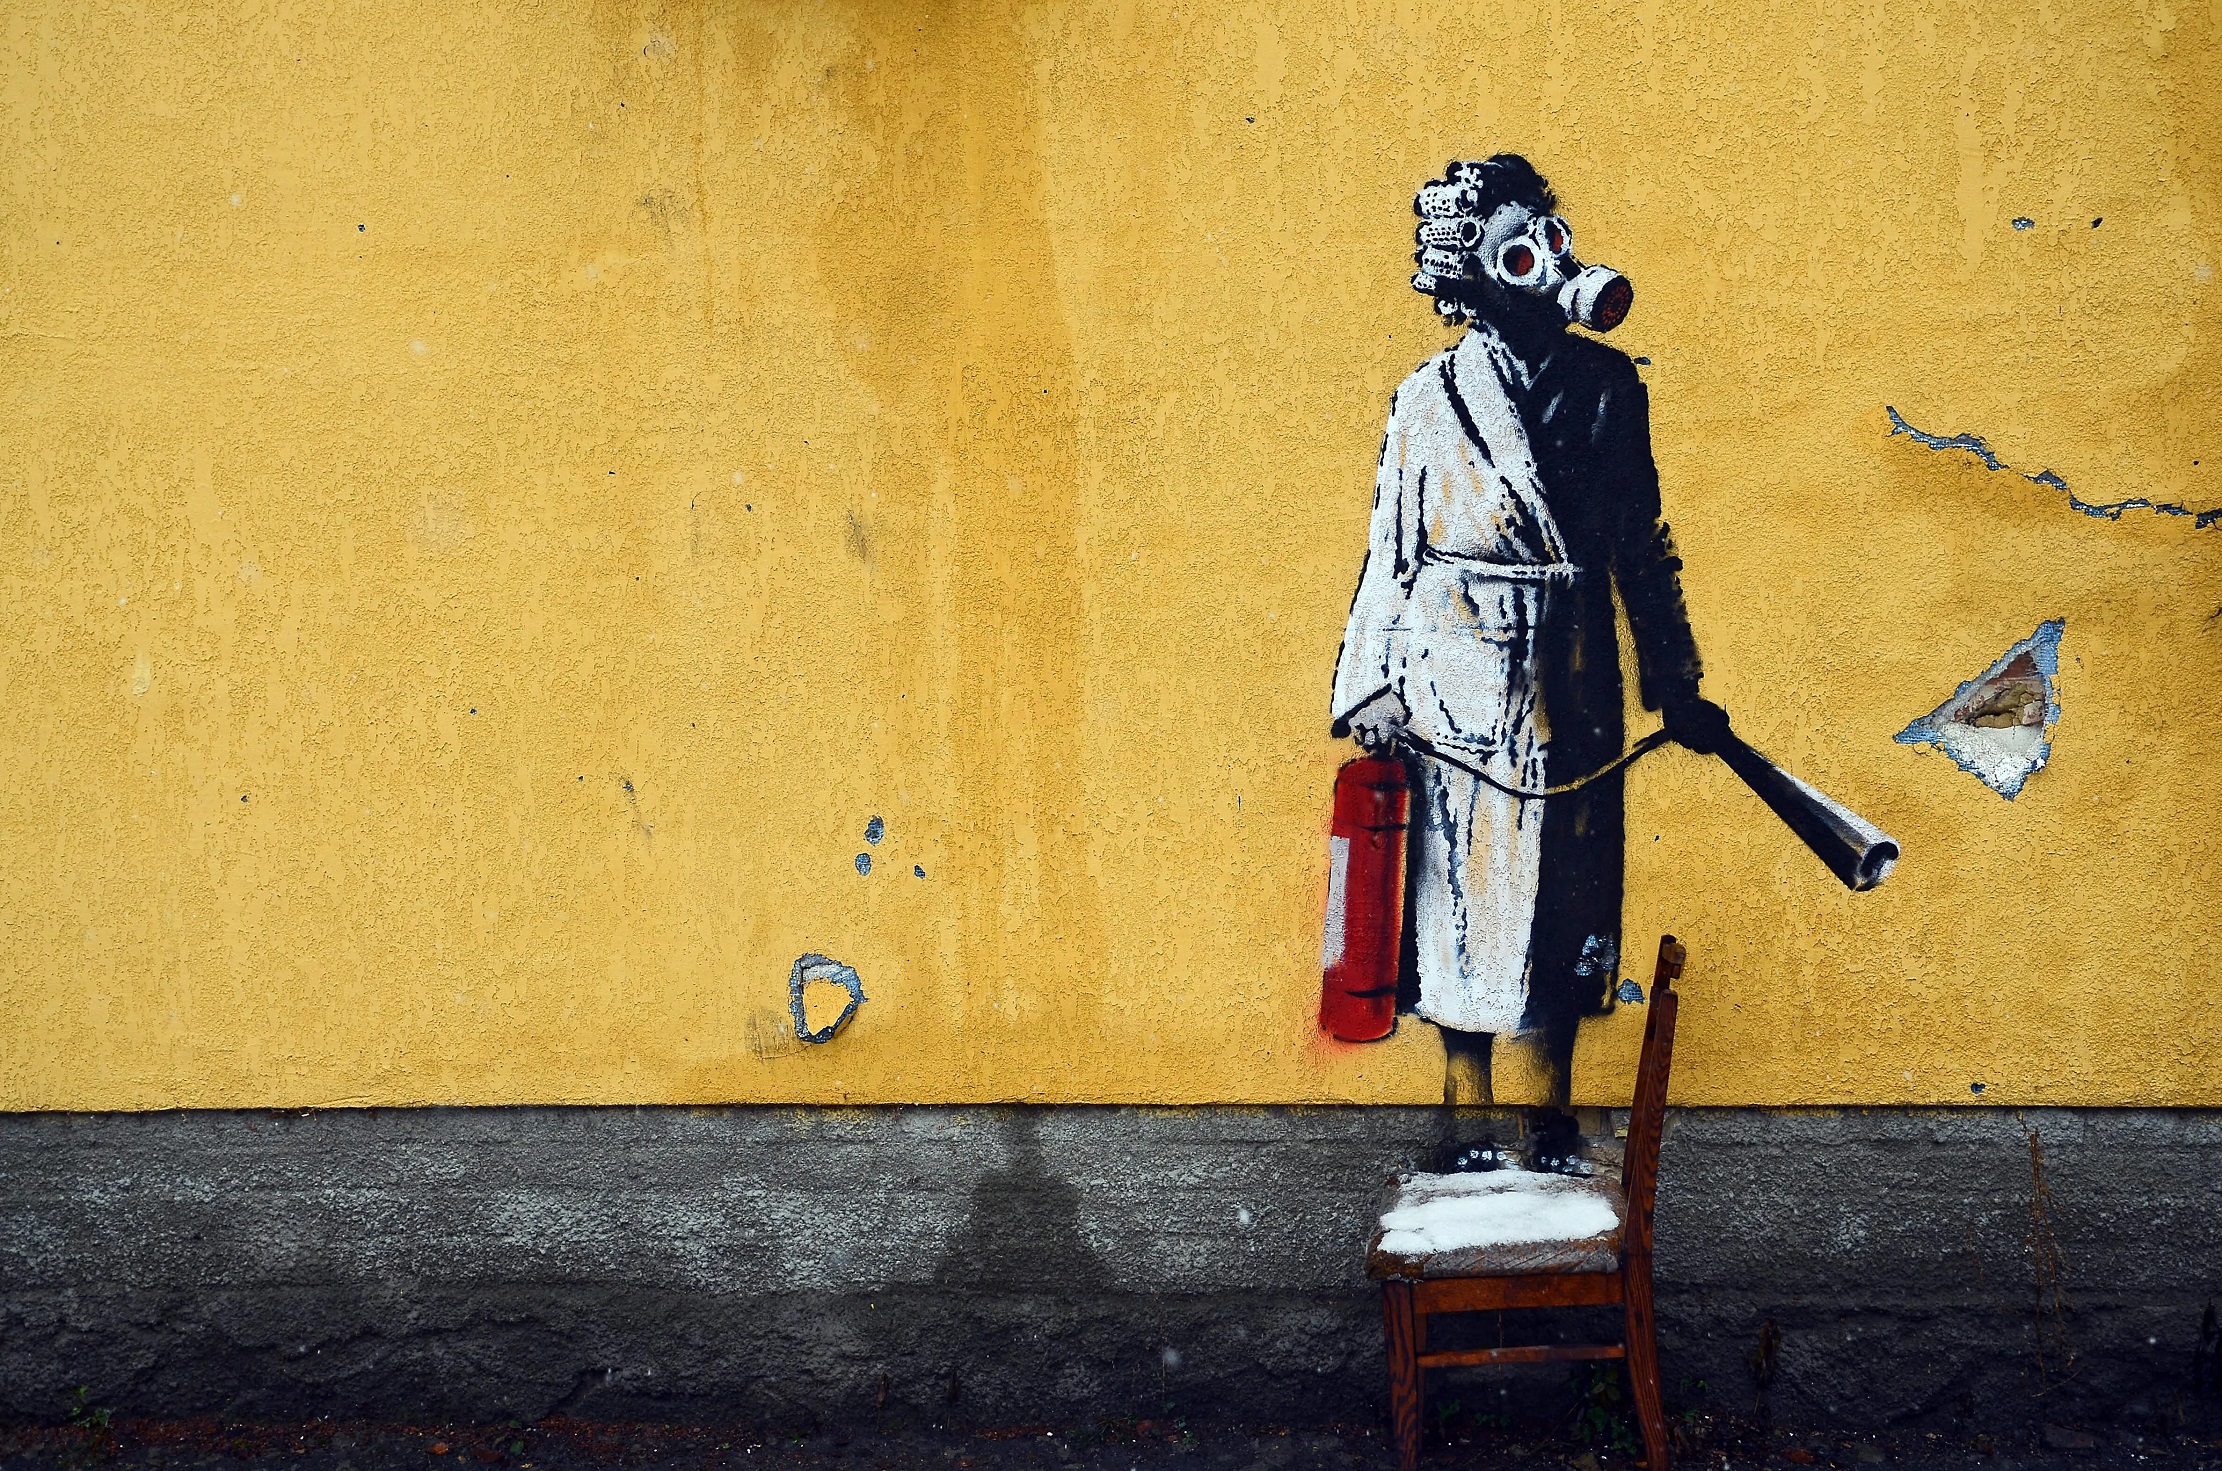 Ajax Systems zabezpieczy graffiti artysty ulicznego Banksy'ego w rejonie Kijowa